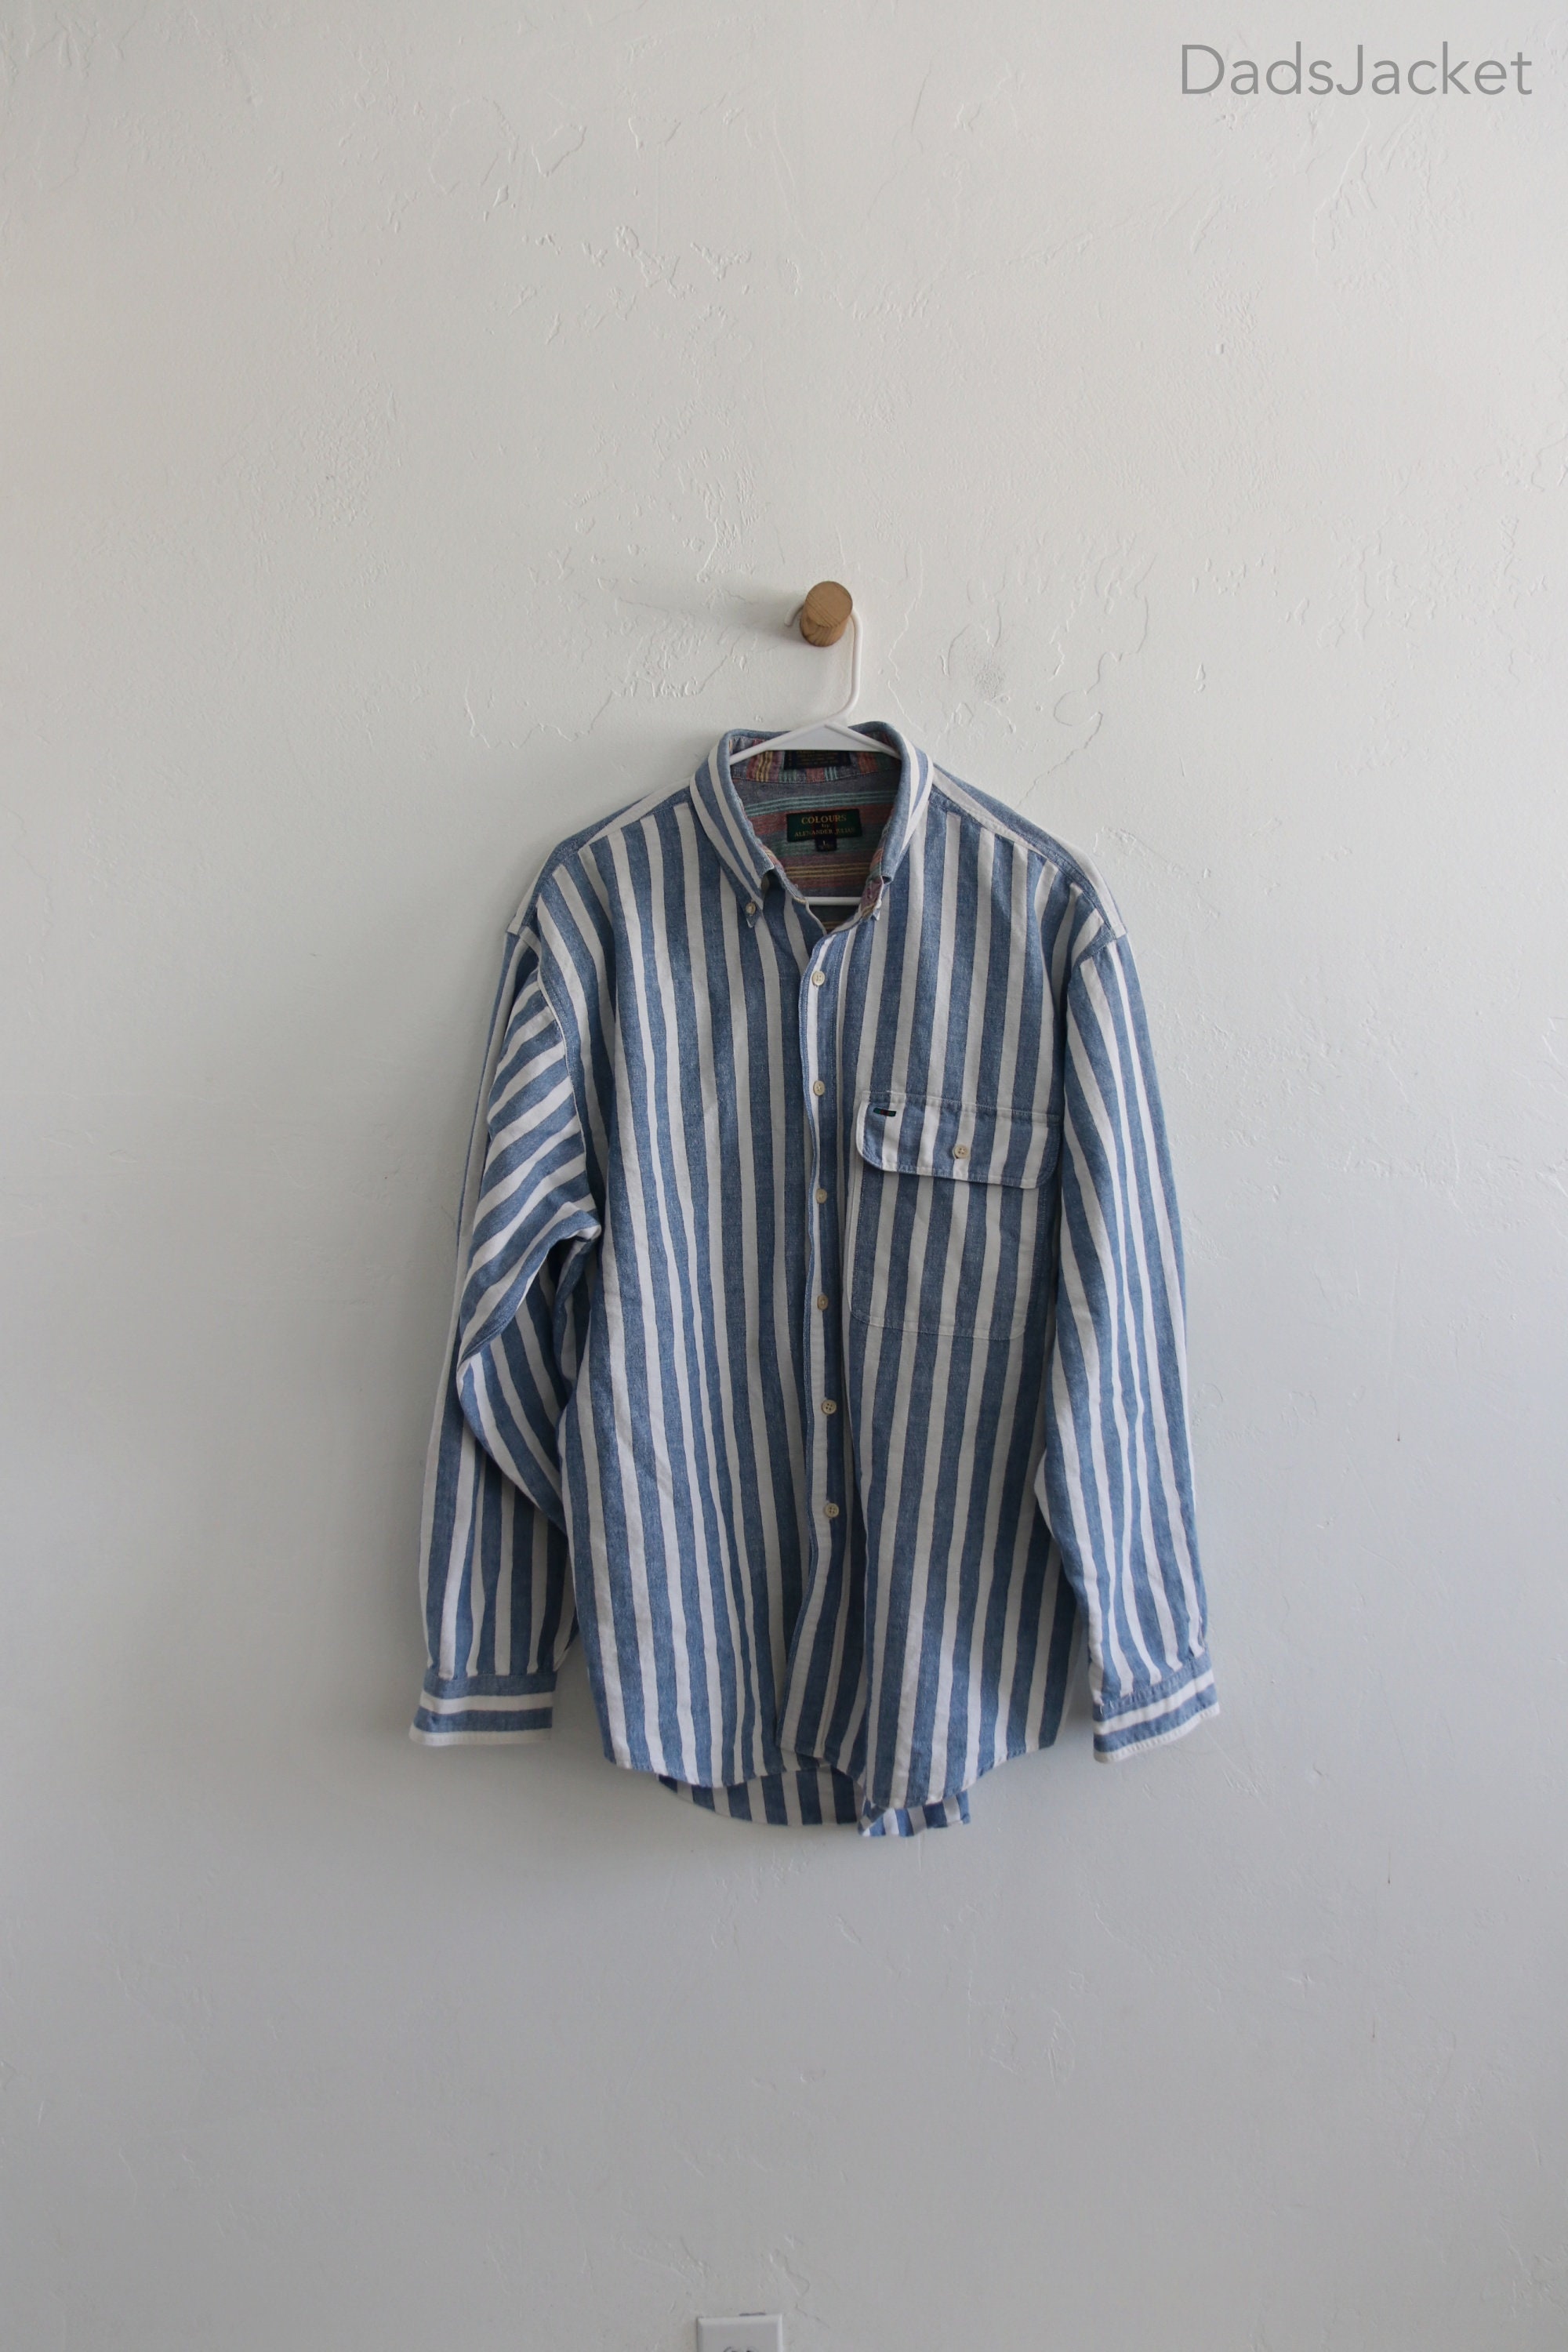 Hutspah Men's Shirt Striped Button Down Vintage Yellow / Gray Cotton  XL 80s